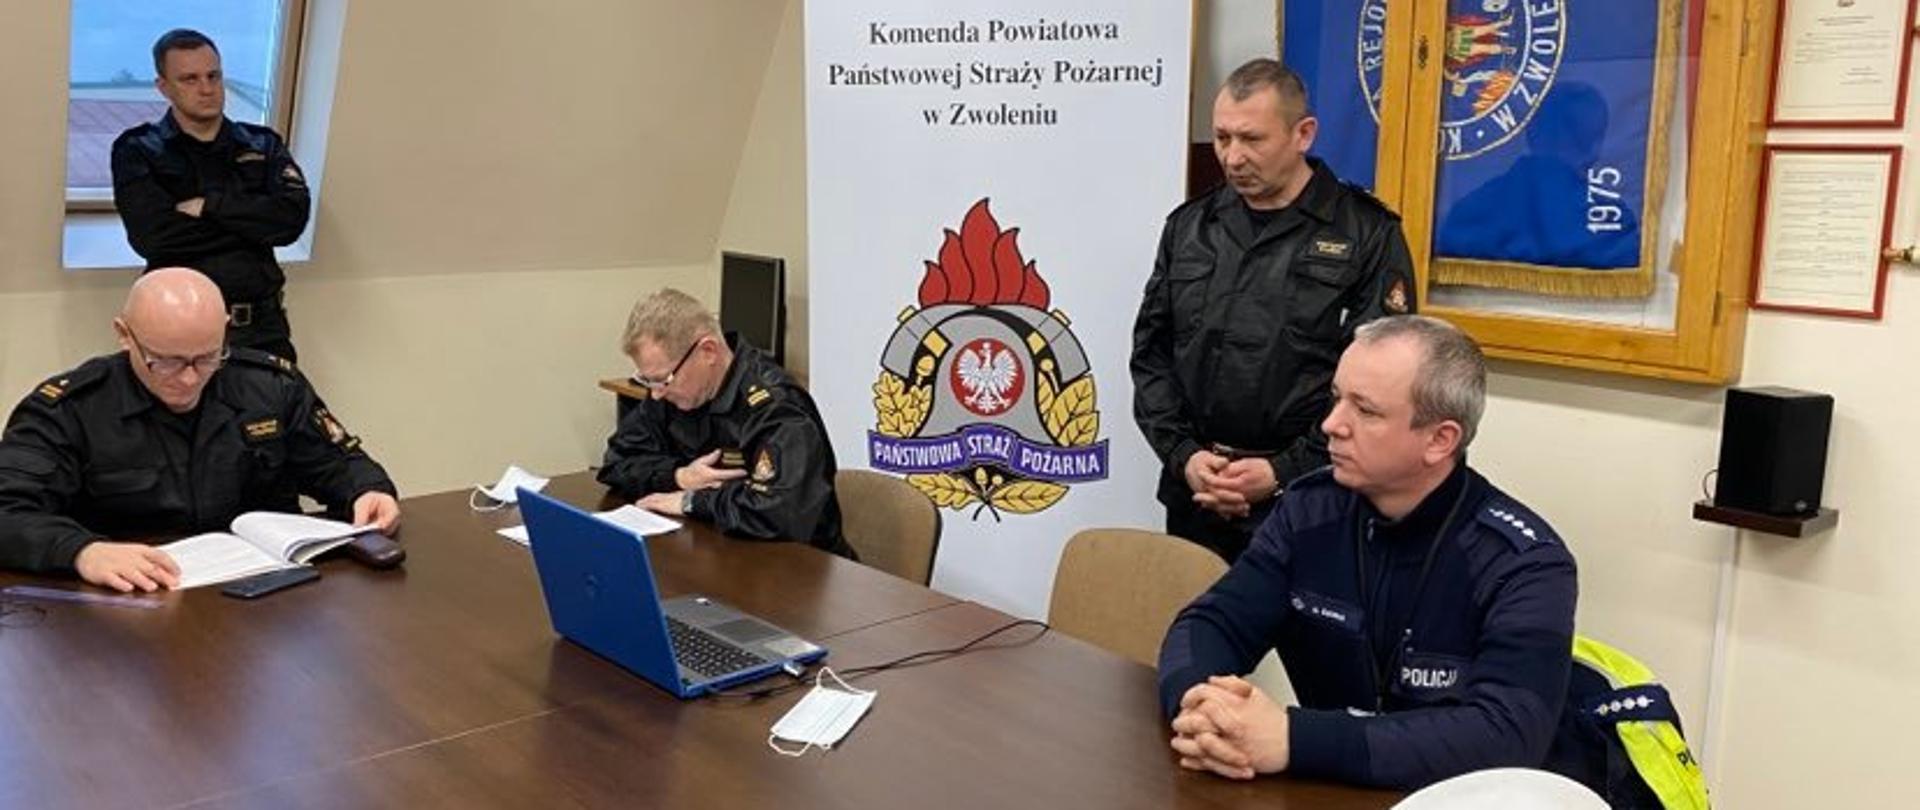 4 osoby na zdjęciu ubrane w ubrania służbowe, w tle rollup Komendy Powiatowej, na stole niebieski laptop